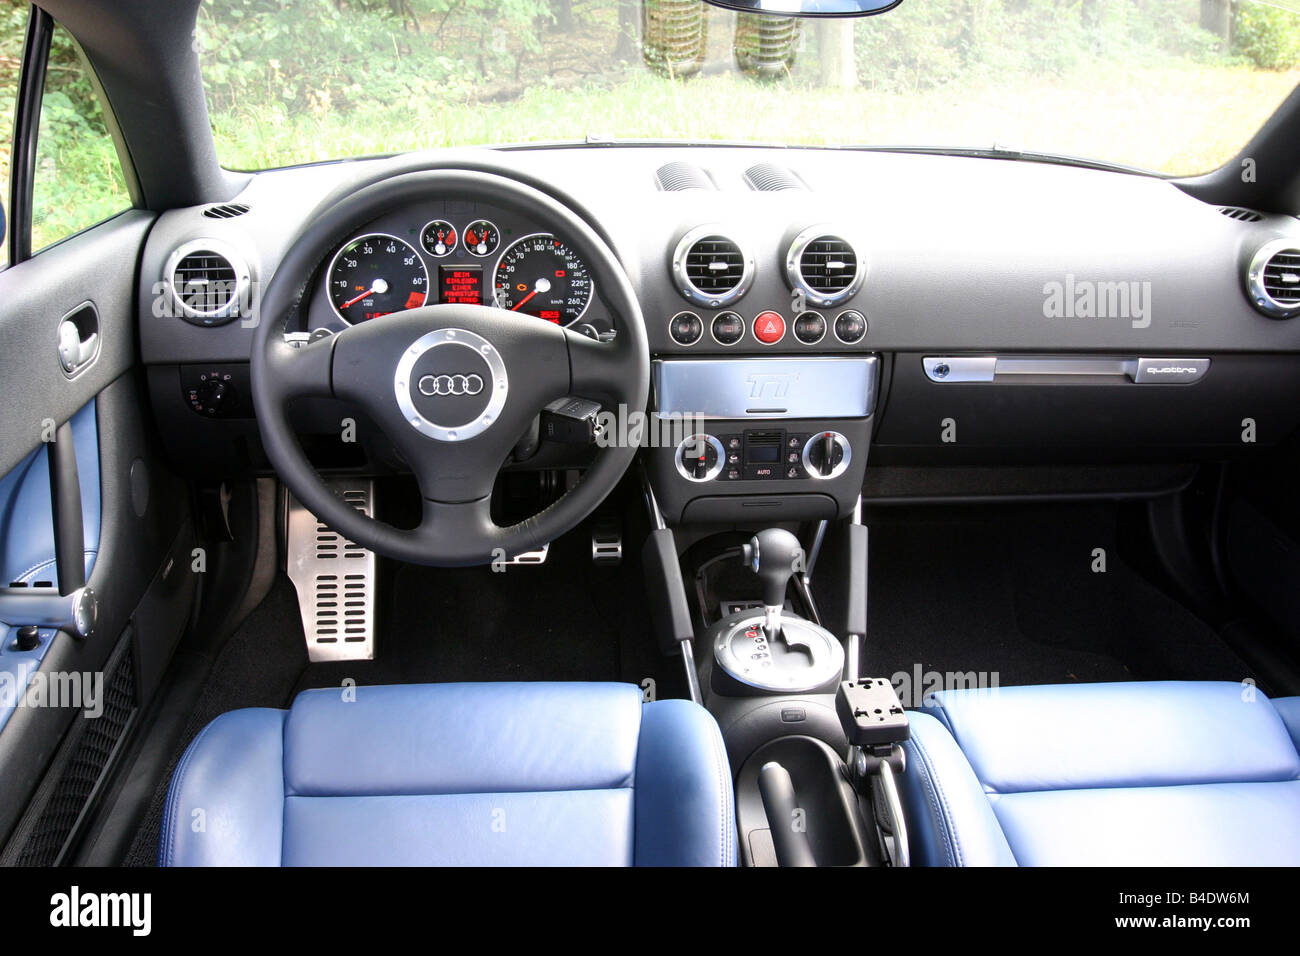 Auto, Audi TT 3.2, Coupe, Roadster, Baujahr 2003-blau, innere besichtigen,  Innenansicht, Cockpit, Technik/Zubehör, Accessori Stockfotografie - Alamy